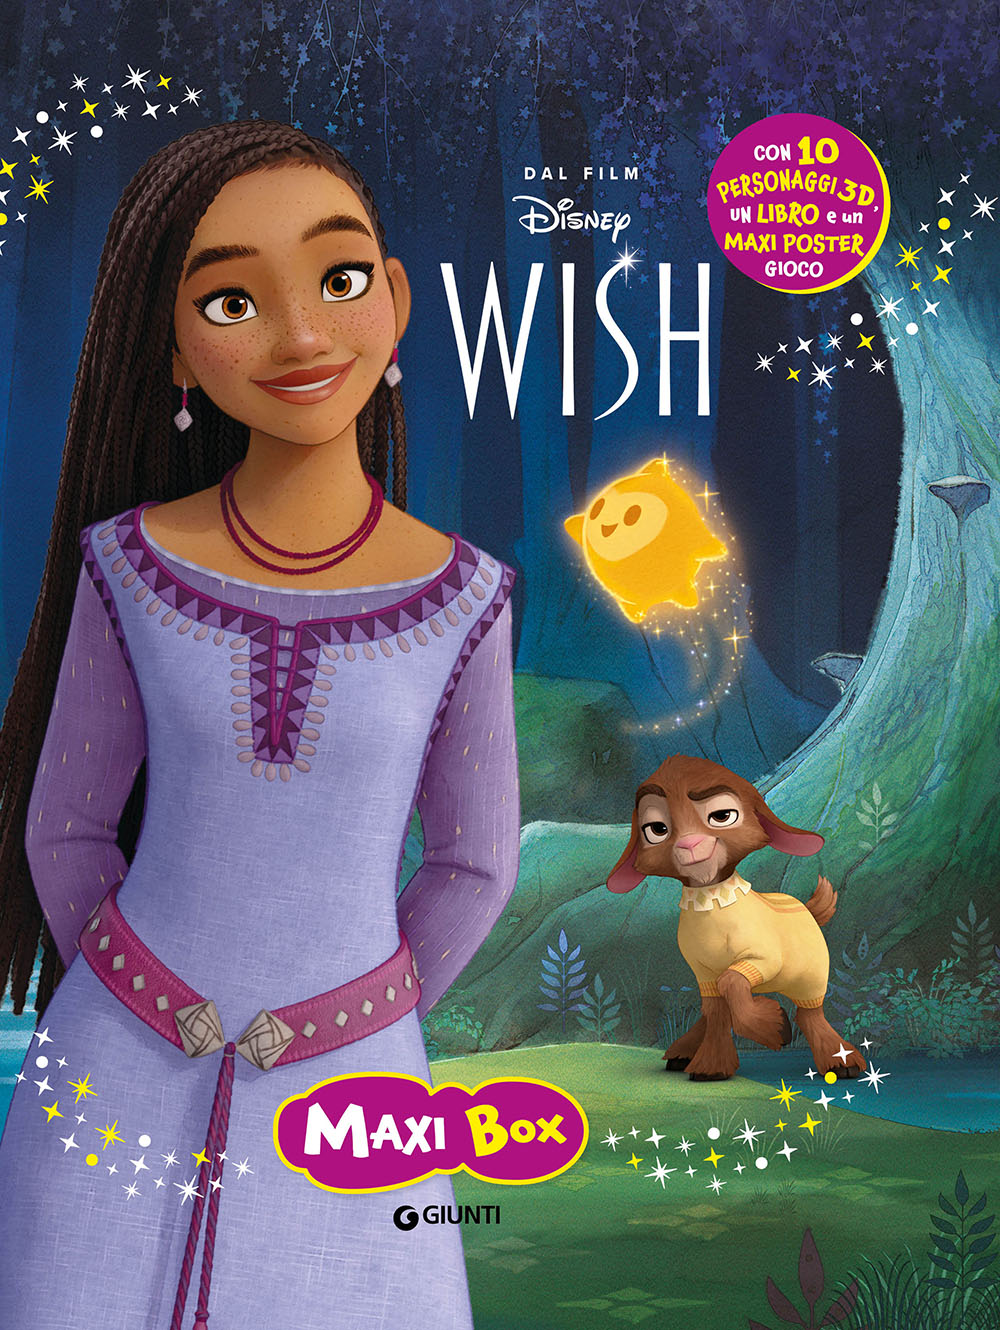 Wish Maxi Box. Con 10 personaggi 3d, un libro e un maxi poster gioco: libro  di Walt Disney